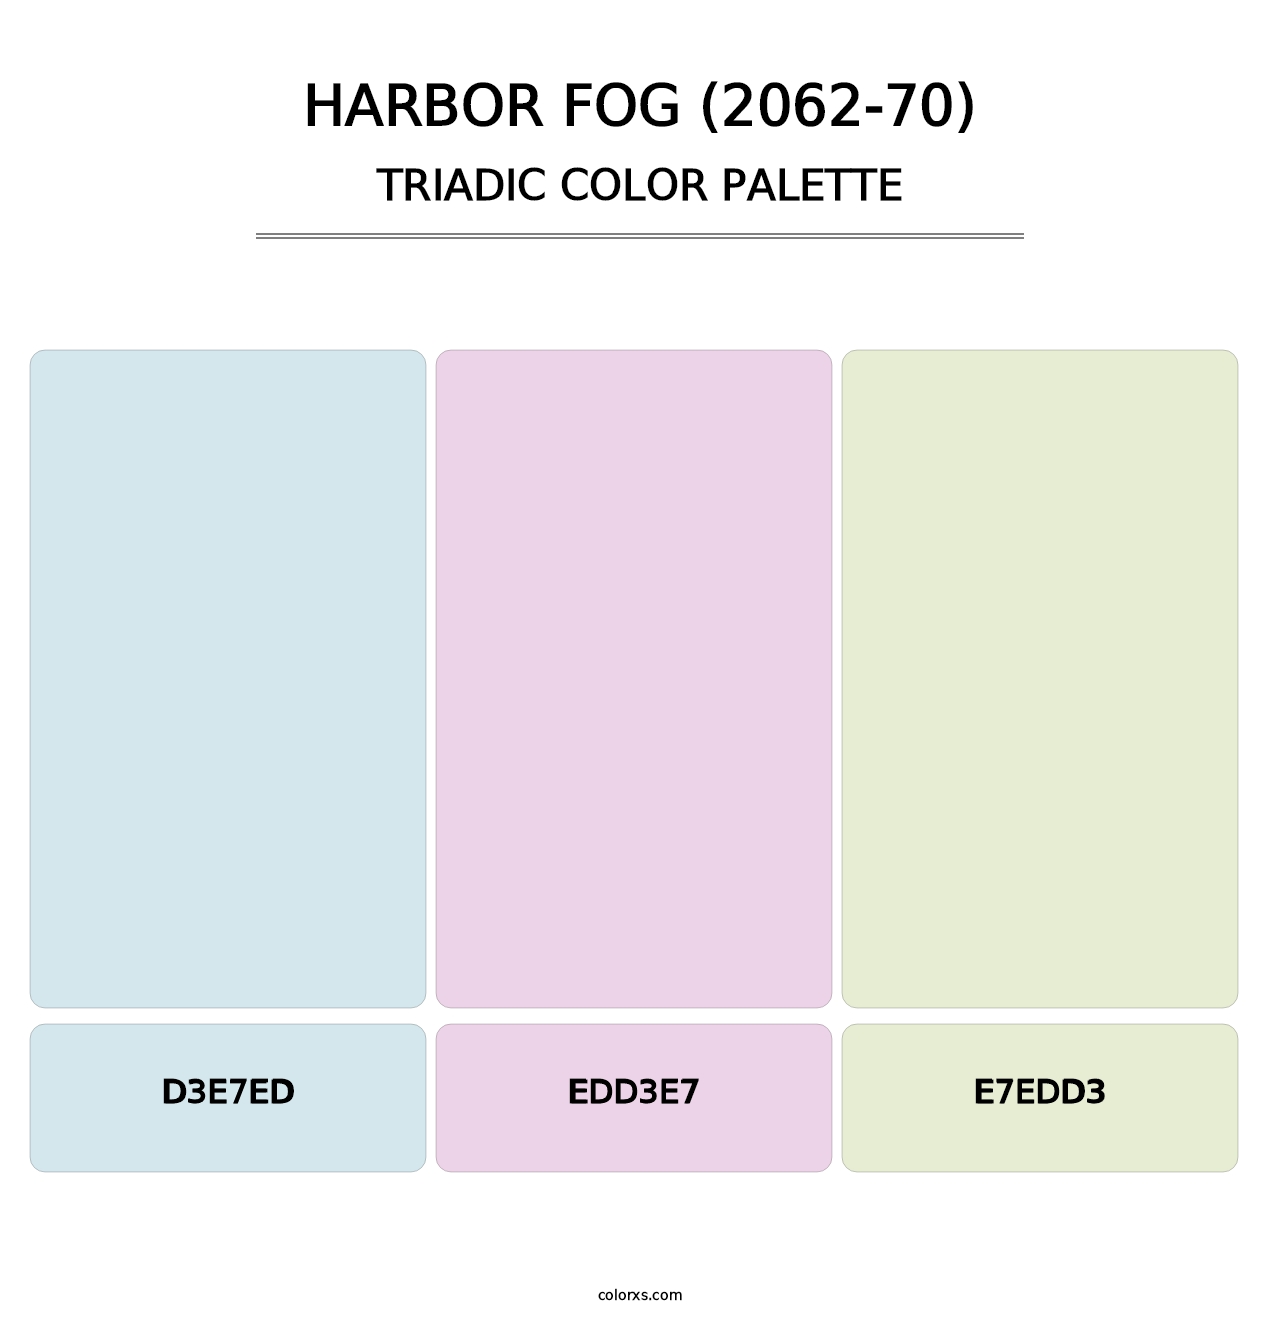 Harbor Fog (2062-70) - Triadic Color Palette